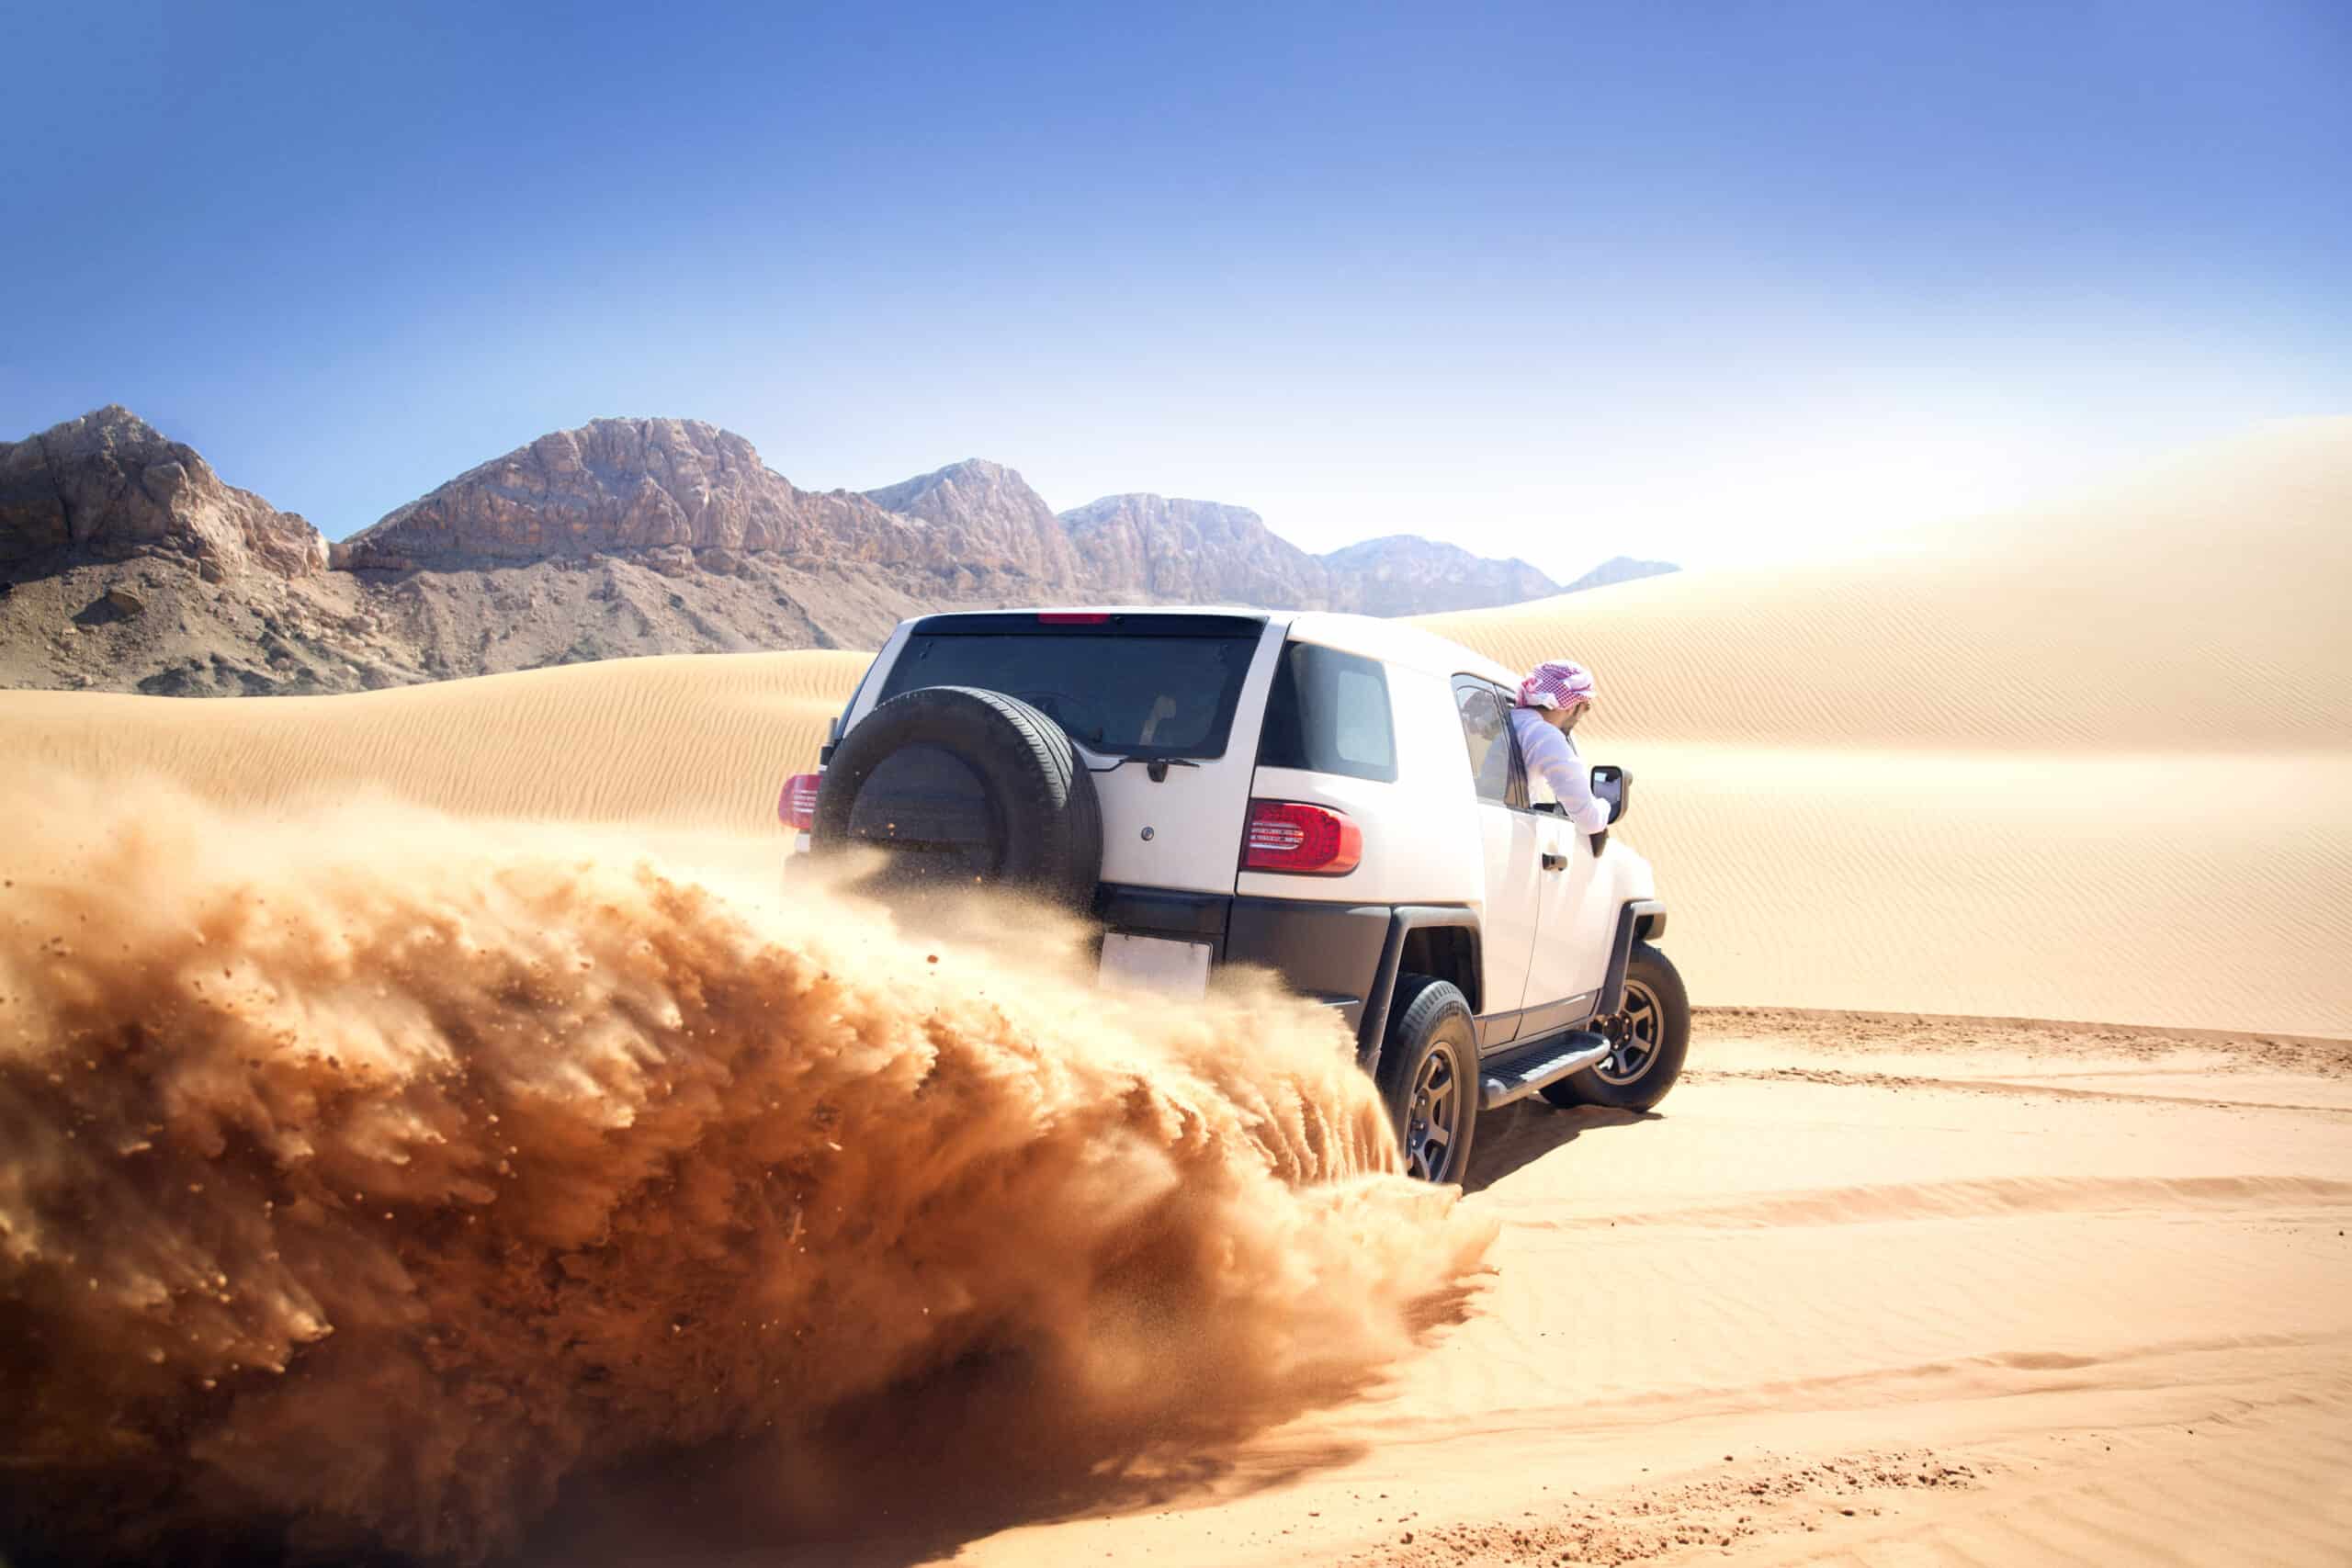 Ein weißer Geländewagen rast durch eine sandige Wüstenlandschaft und wirbelt dabei Sand auf. Im Hintergrund sind Berge zu sehen, der Himmel ist klar und blau. Aus dem Beifahrerfenster blickt eine Person mit Kopftuch. © Fotografie Tomas Rodriguez